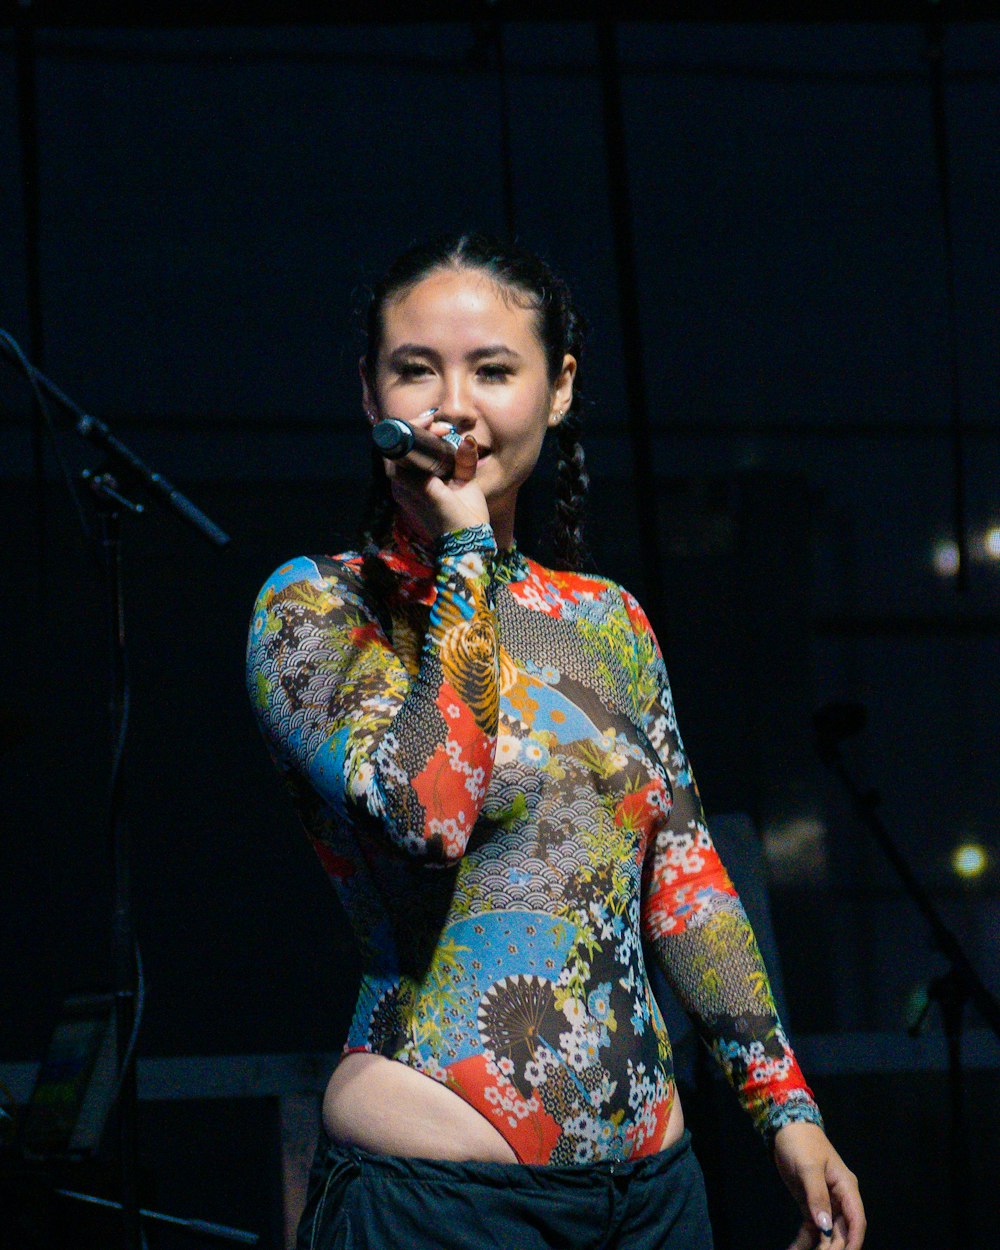 una mujer con una camisa de colores cantando en un micrófono